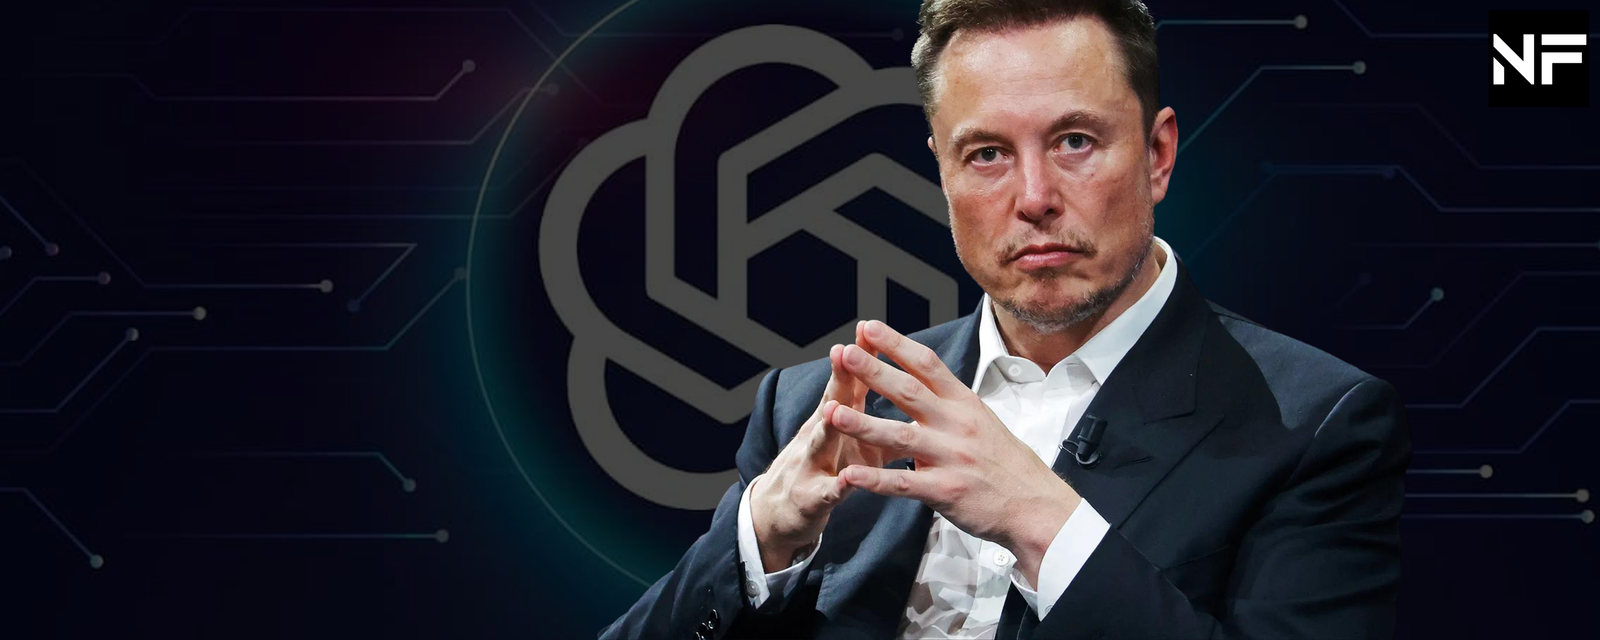 Elon Musk's involvement in Open AI